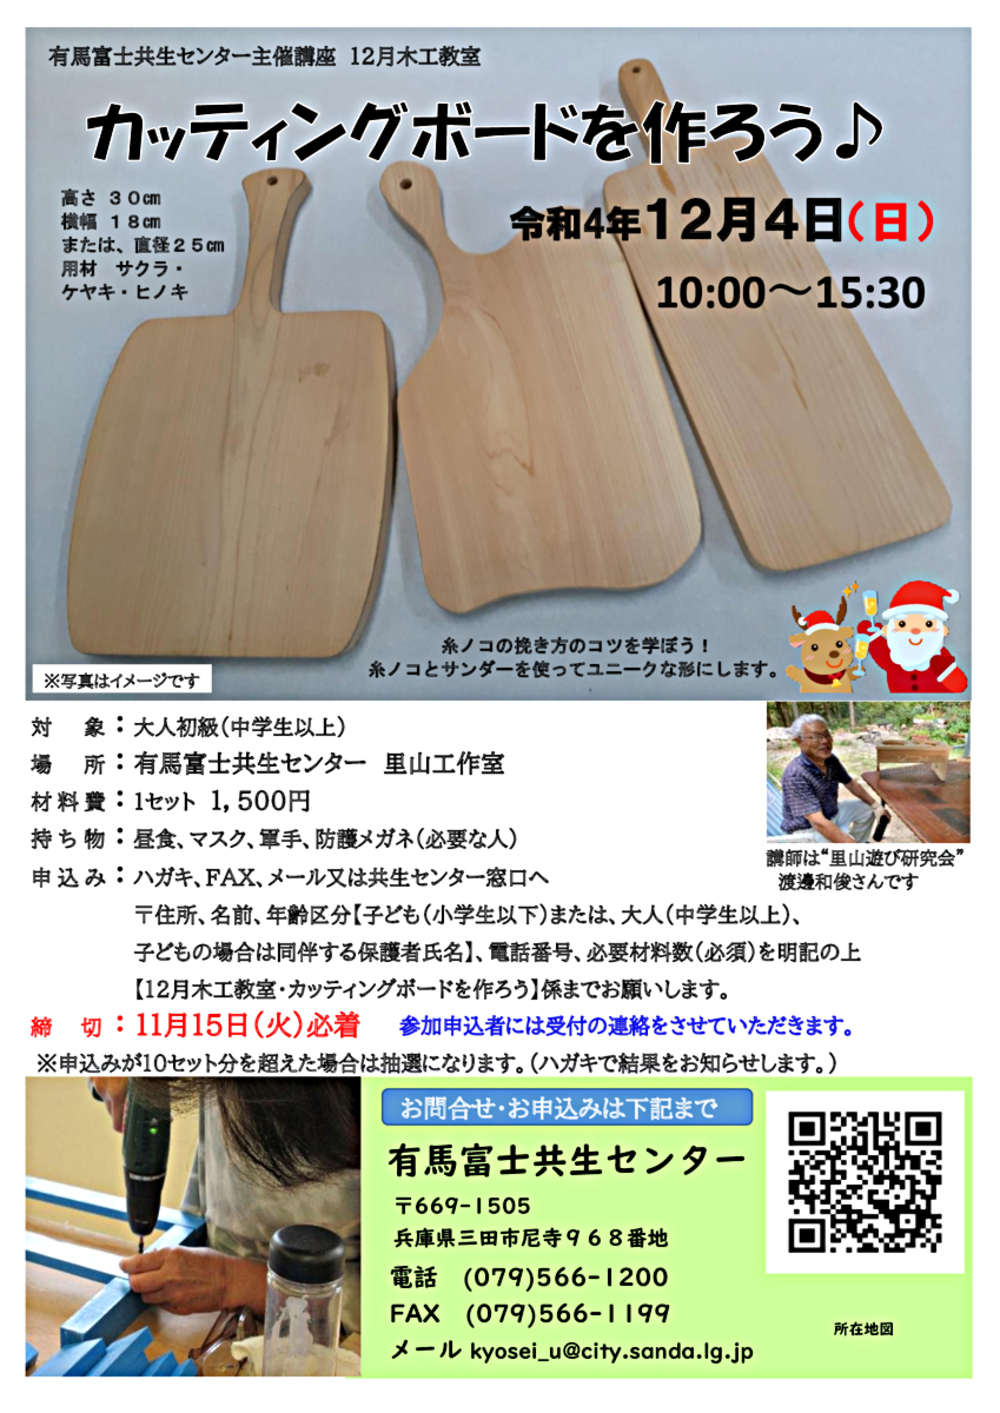 12月木工教室「カッティングボードを作ろう」